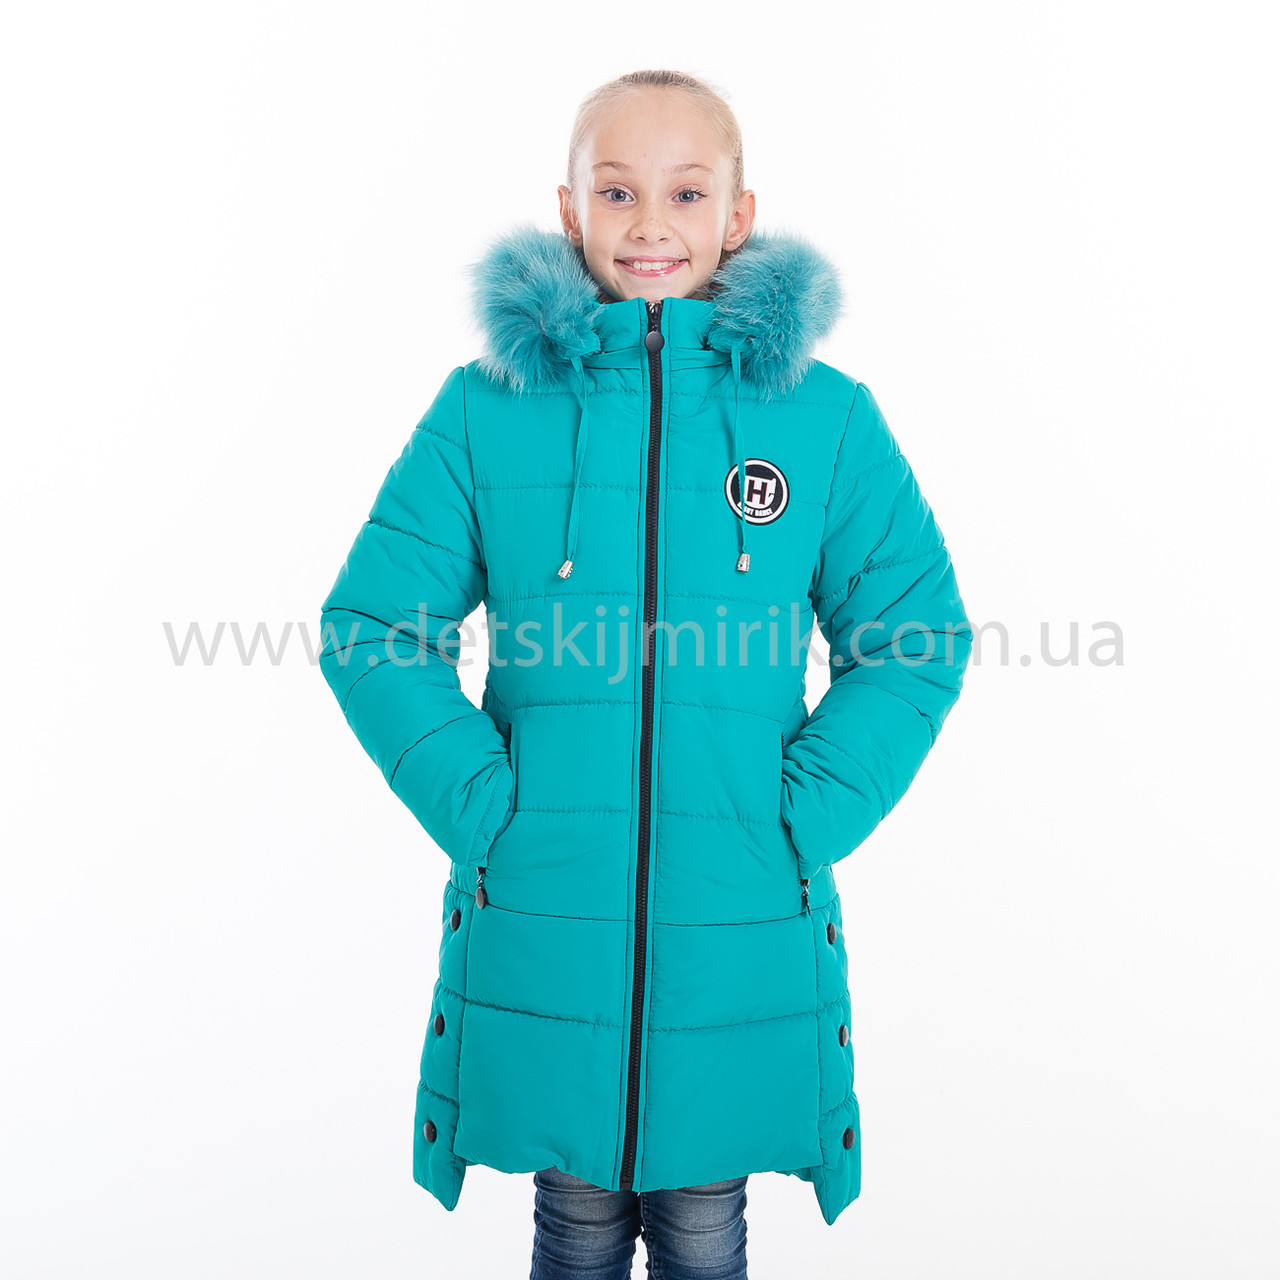 Зимова куртка для дівчинки " Катерина", Зима 2019 року